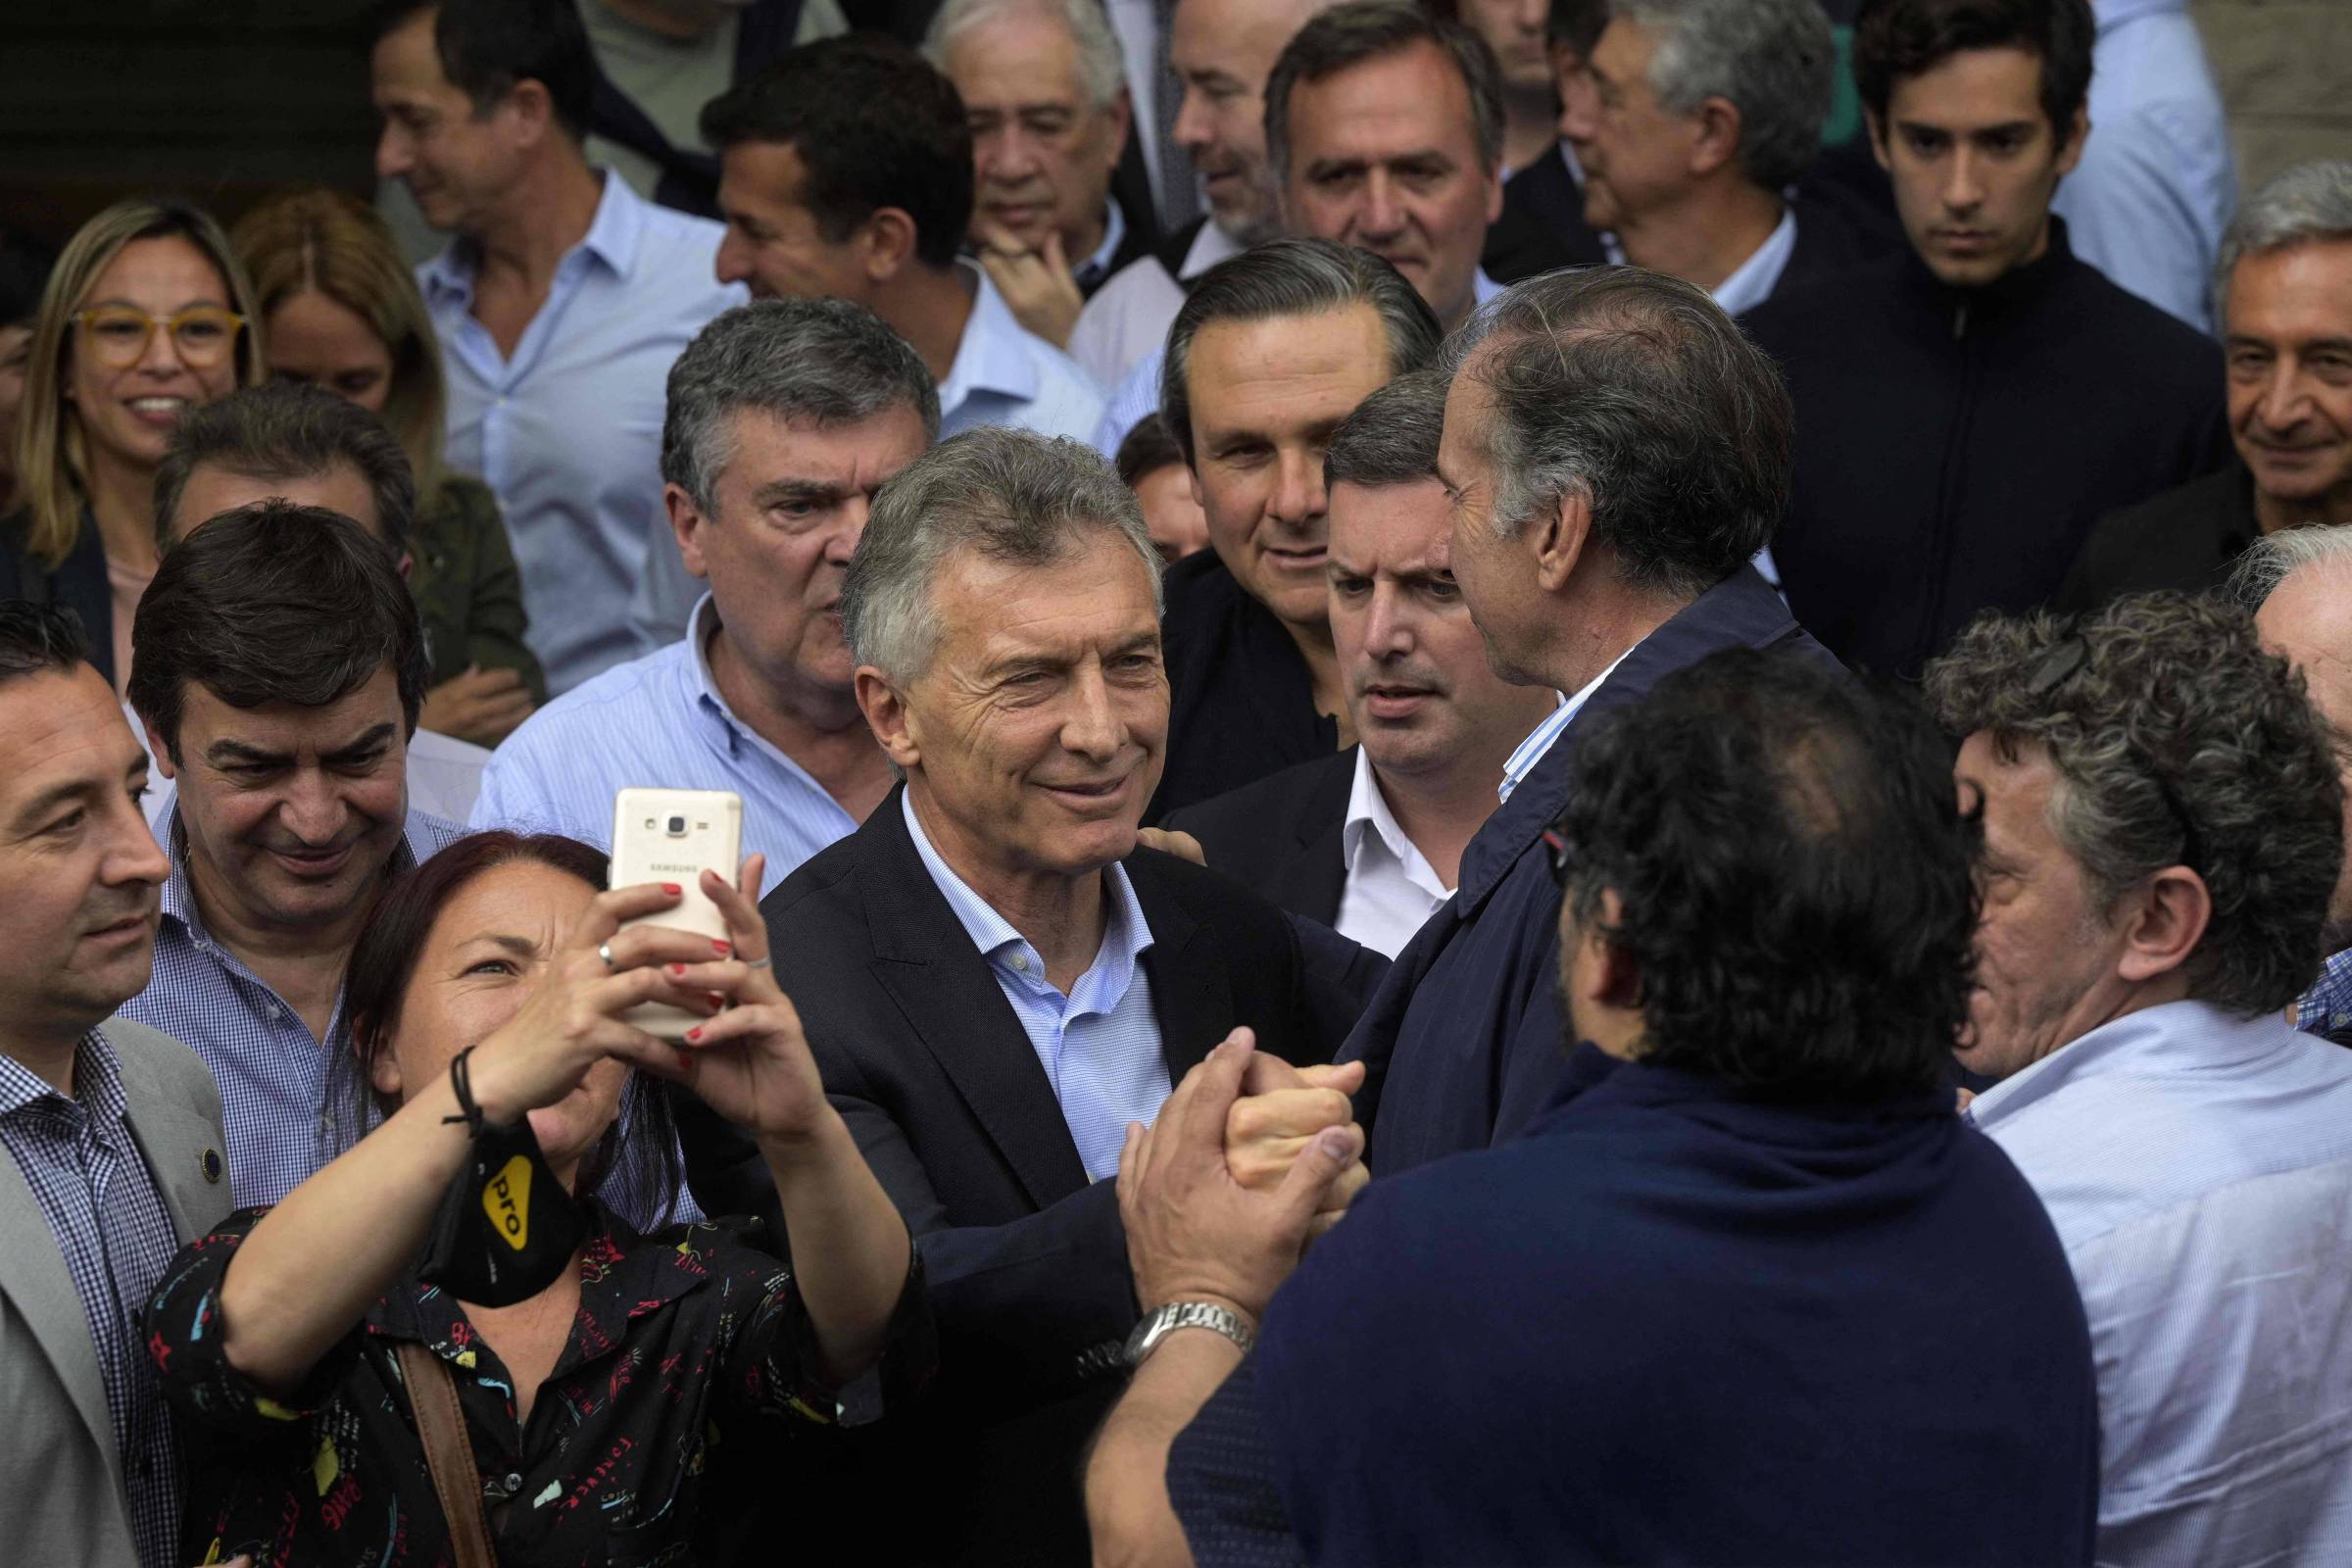 Macri participa en el testimonio, presenta una carta y no responde ninguna pregunta – 03/11/2021 – Mundo